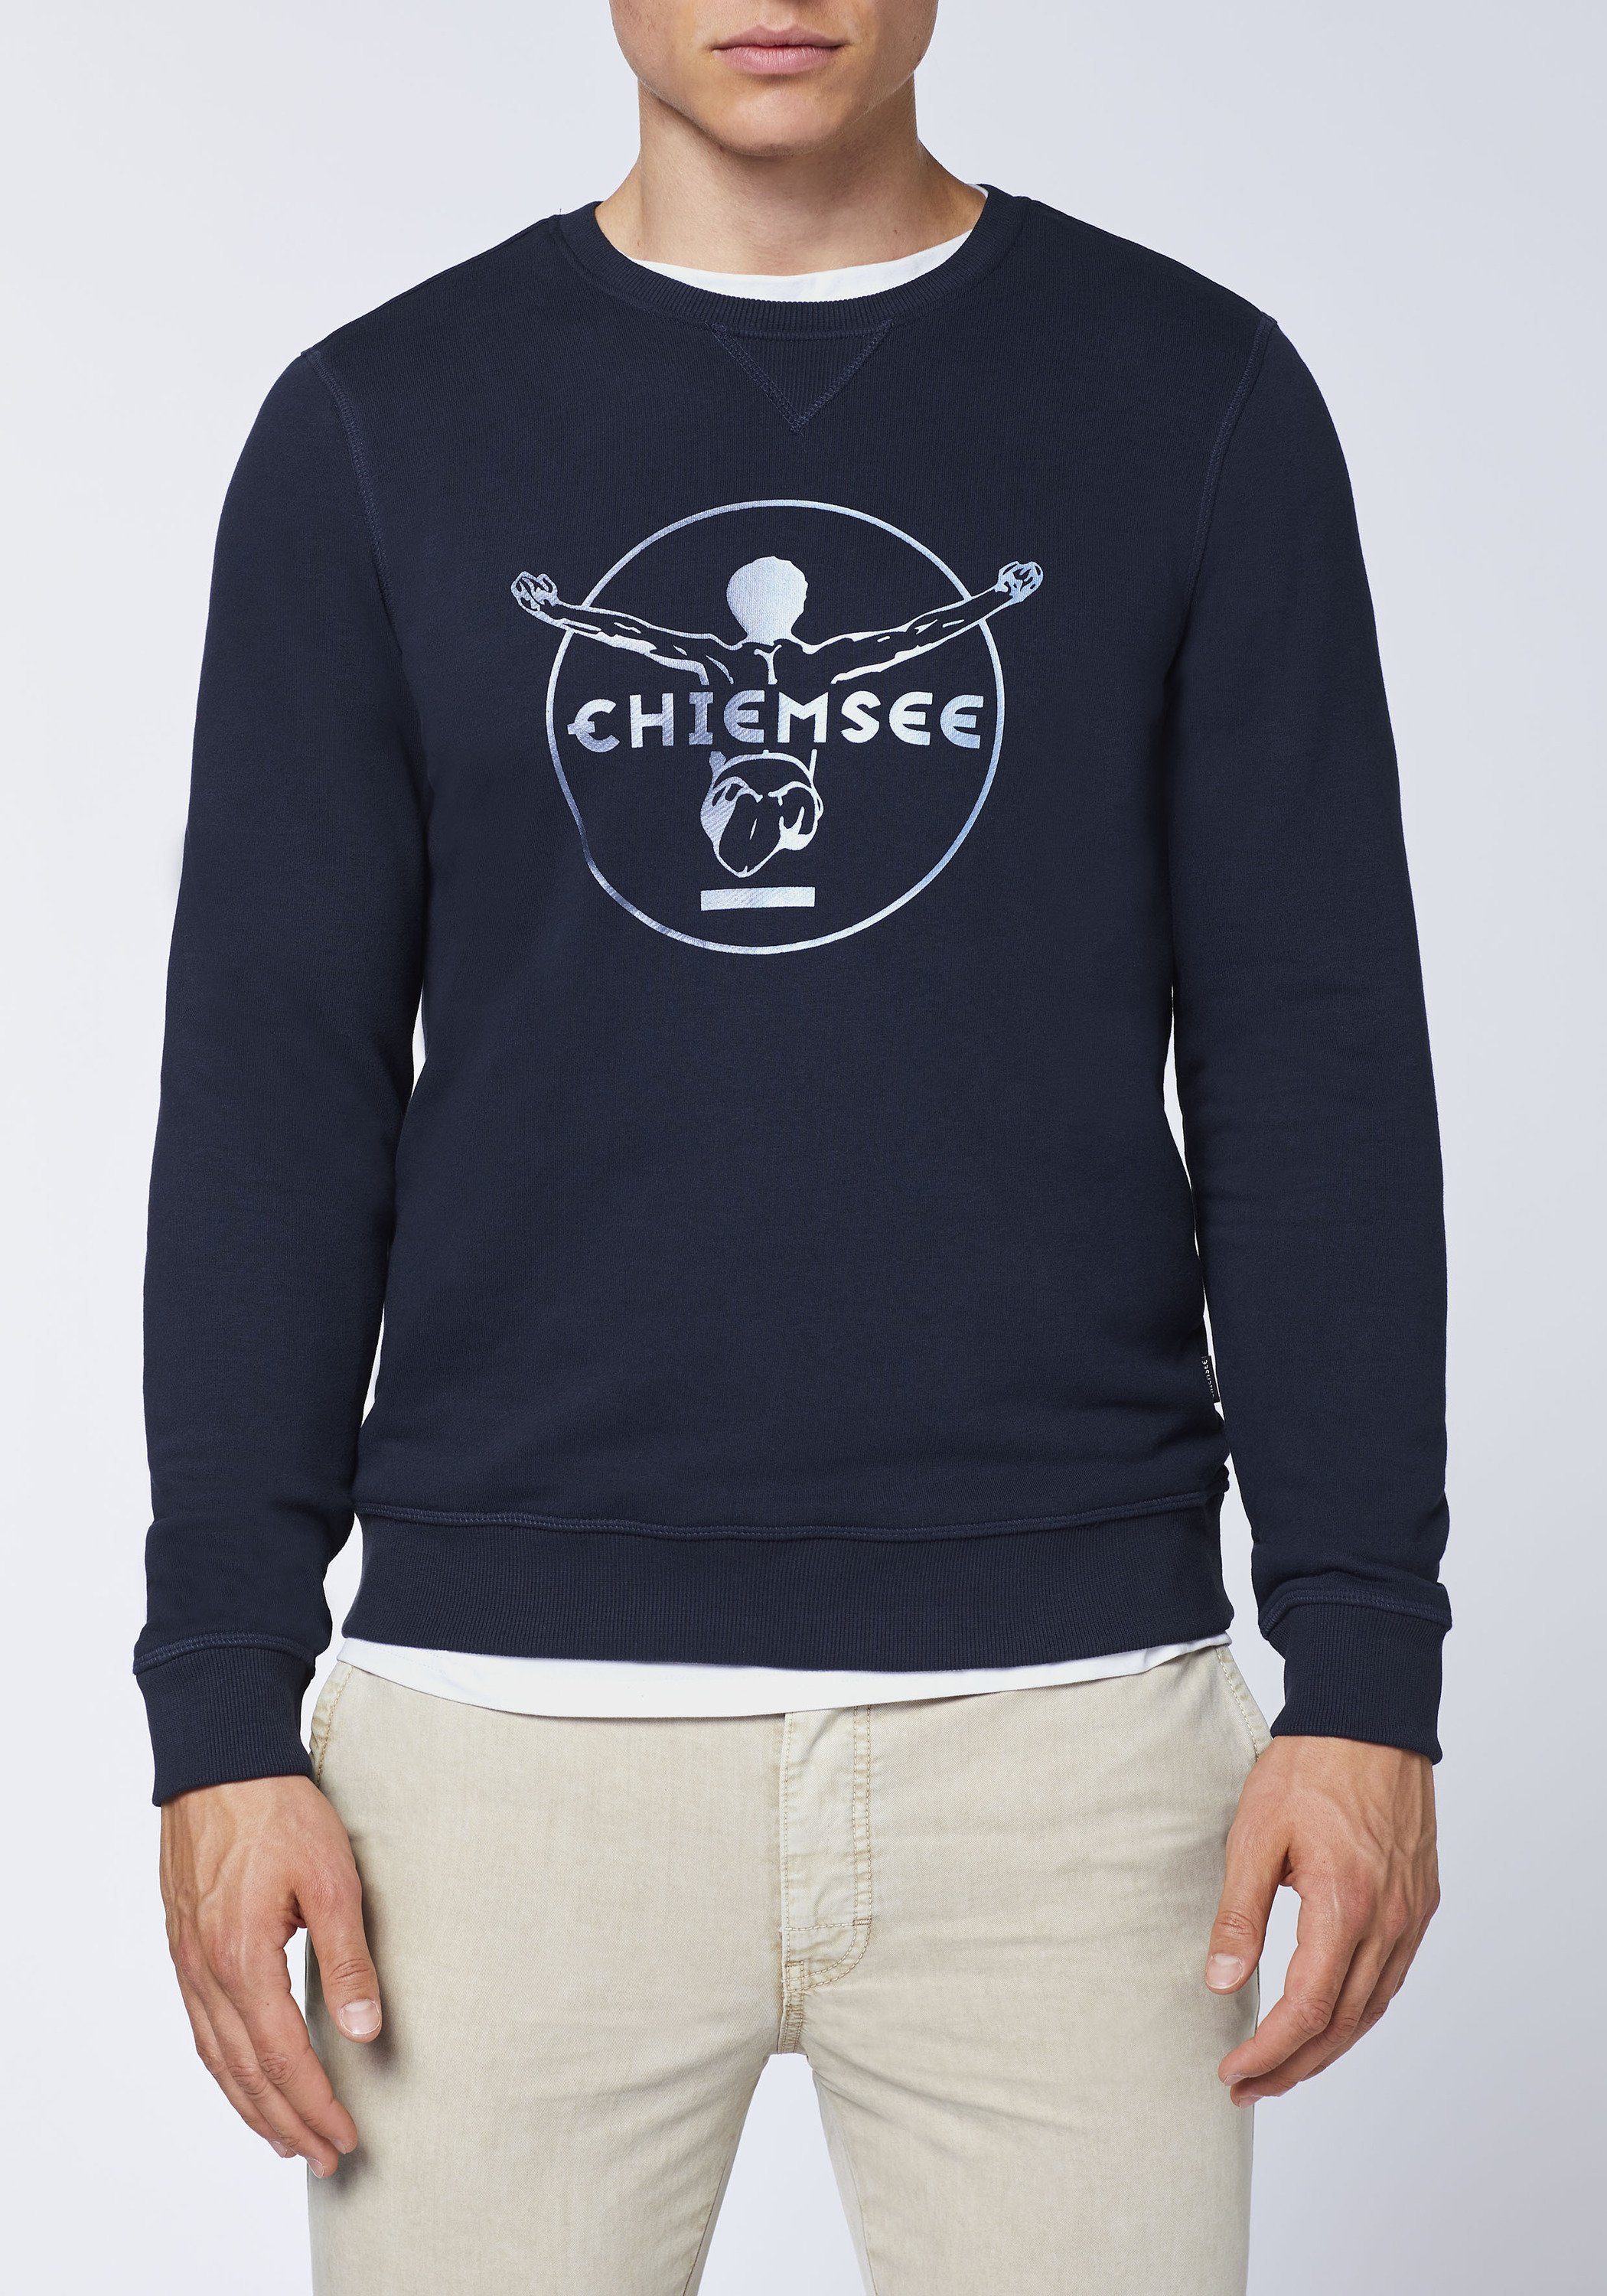 Chiemsee Sweatshirt Sweater im blau 1 Label-Look dunkel